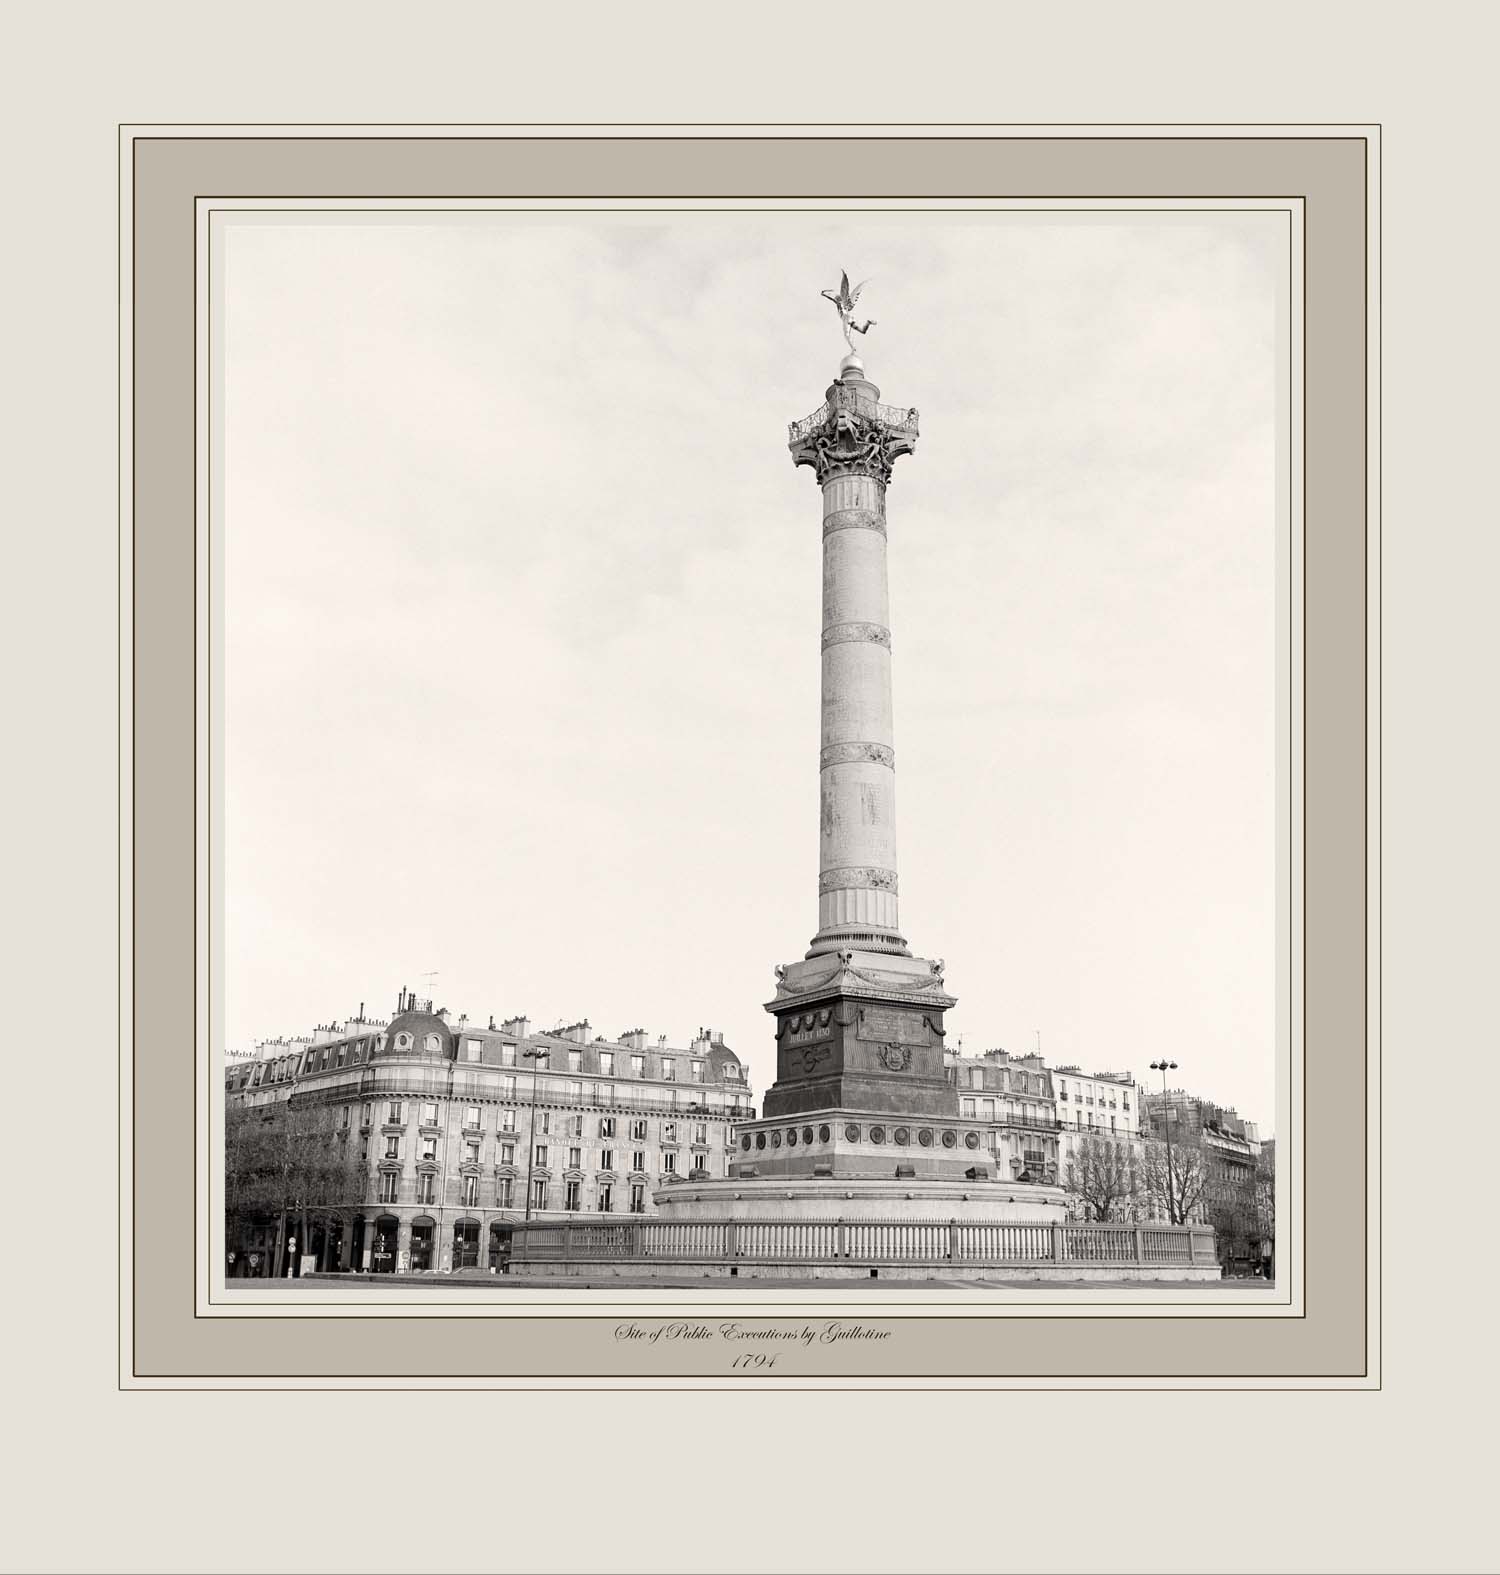 Site of Public Executions by Guillotine 1794  (Place de Bastille, Paris)